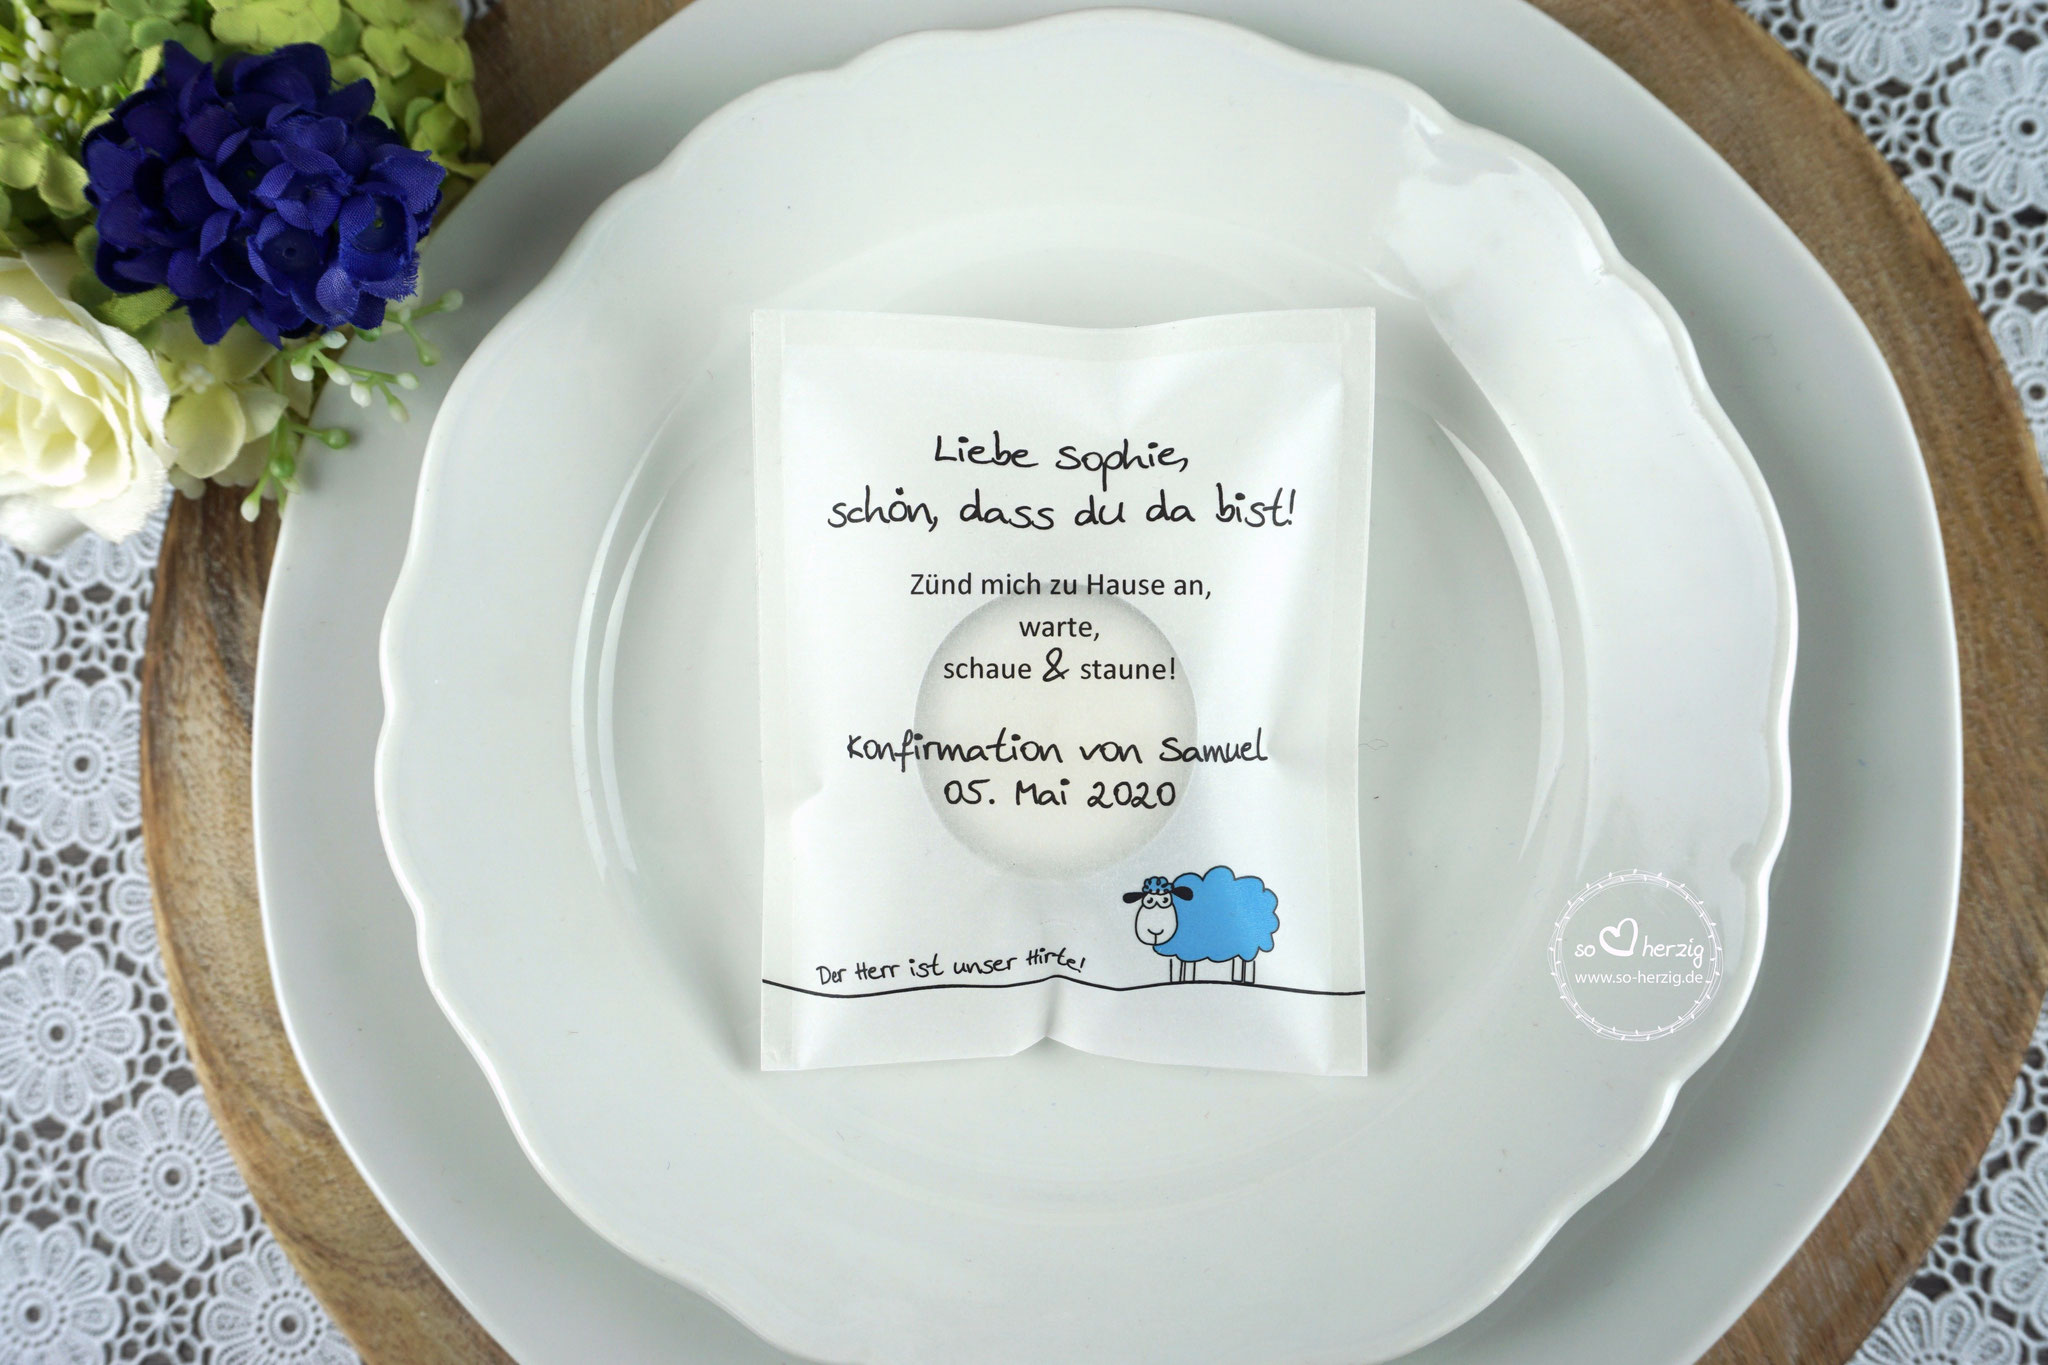 Teelicht-Botschaft "Verpackung als Platzkarte", Design "Schaf" Blau- ohne farbigen Rand unten - als Platzkarte